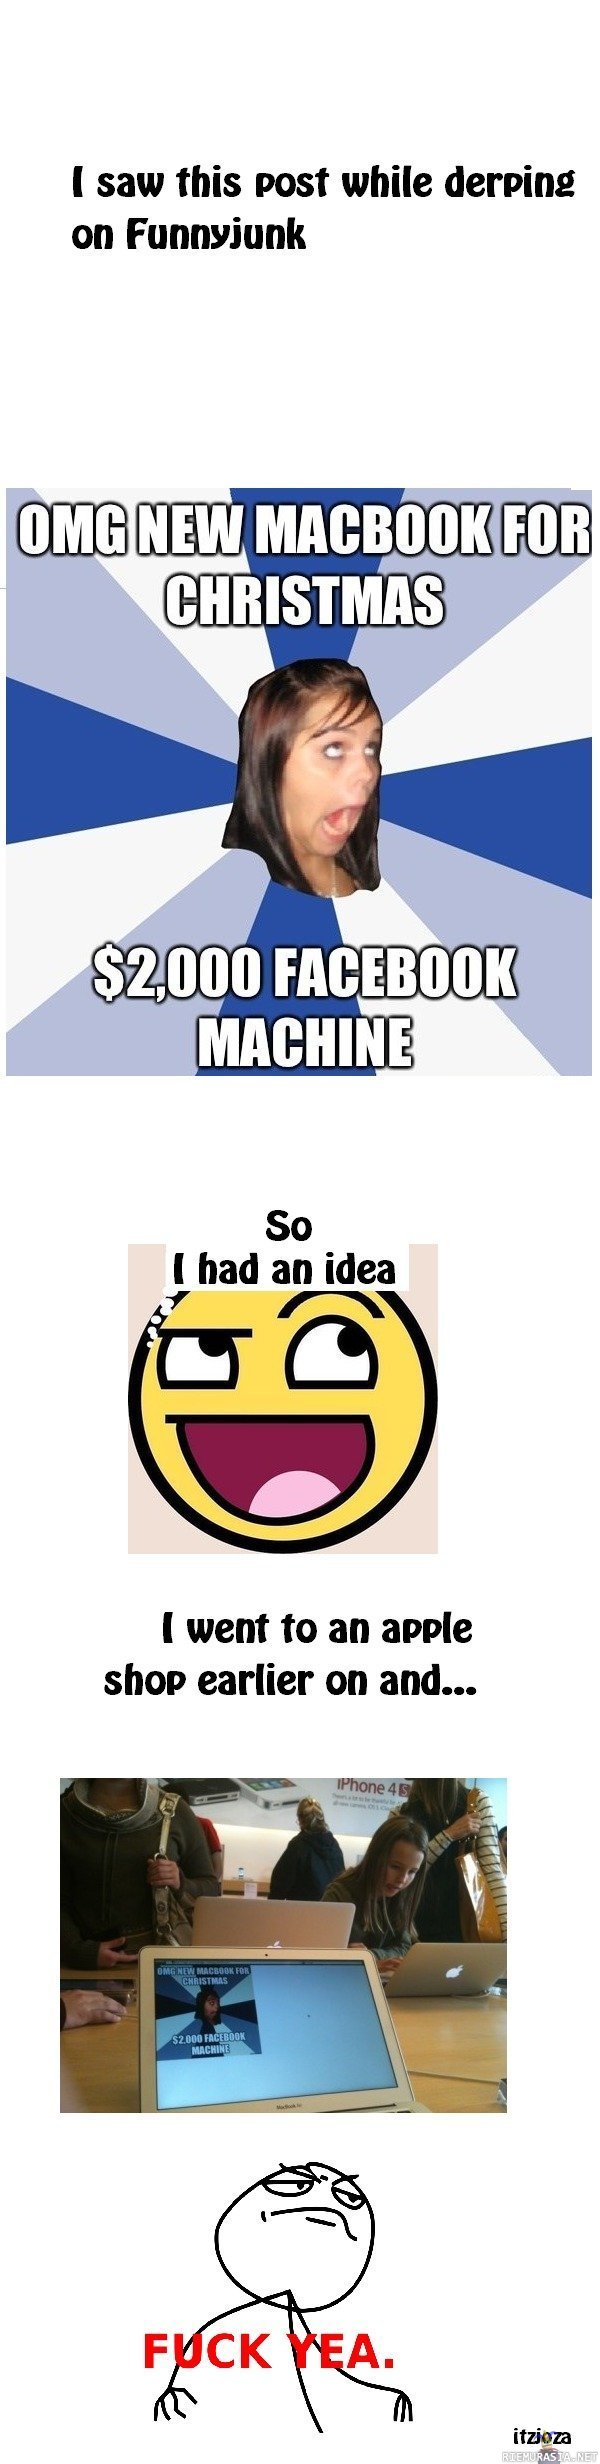 Facebook machine - Näin niille kaikille pitäisi tehdä.